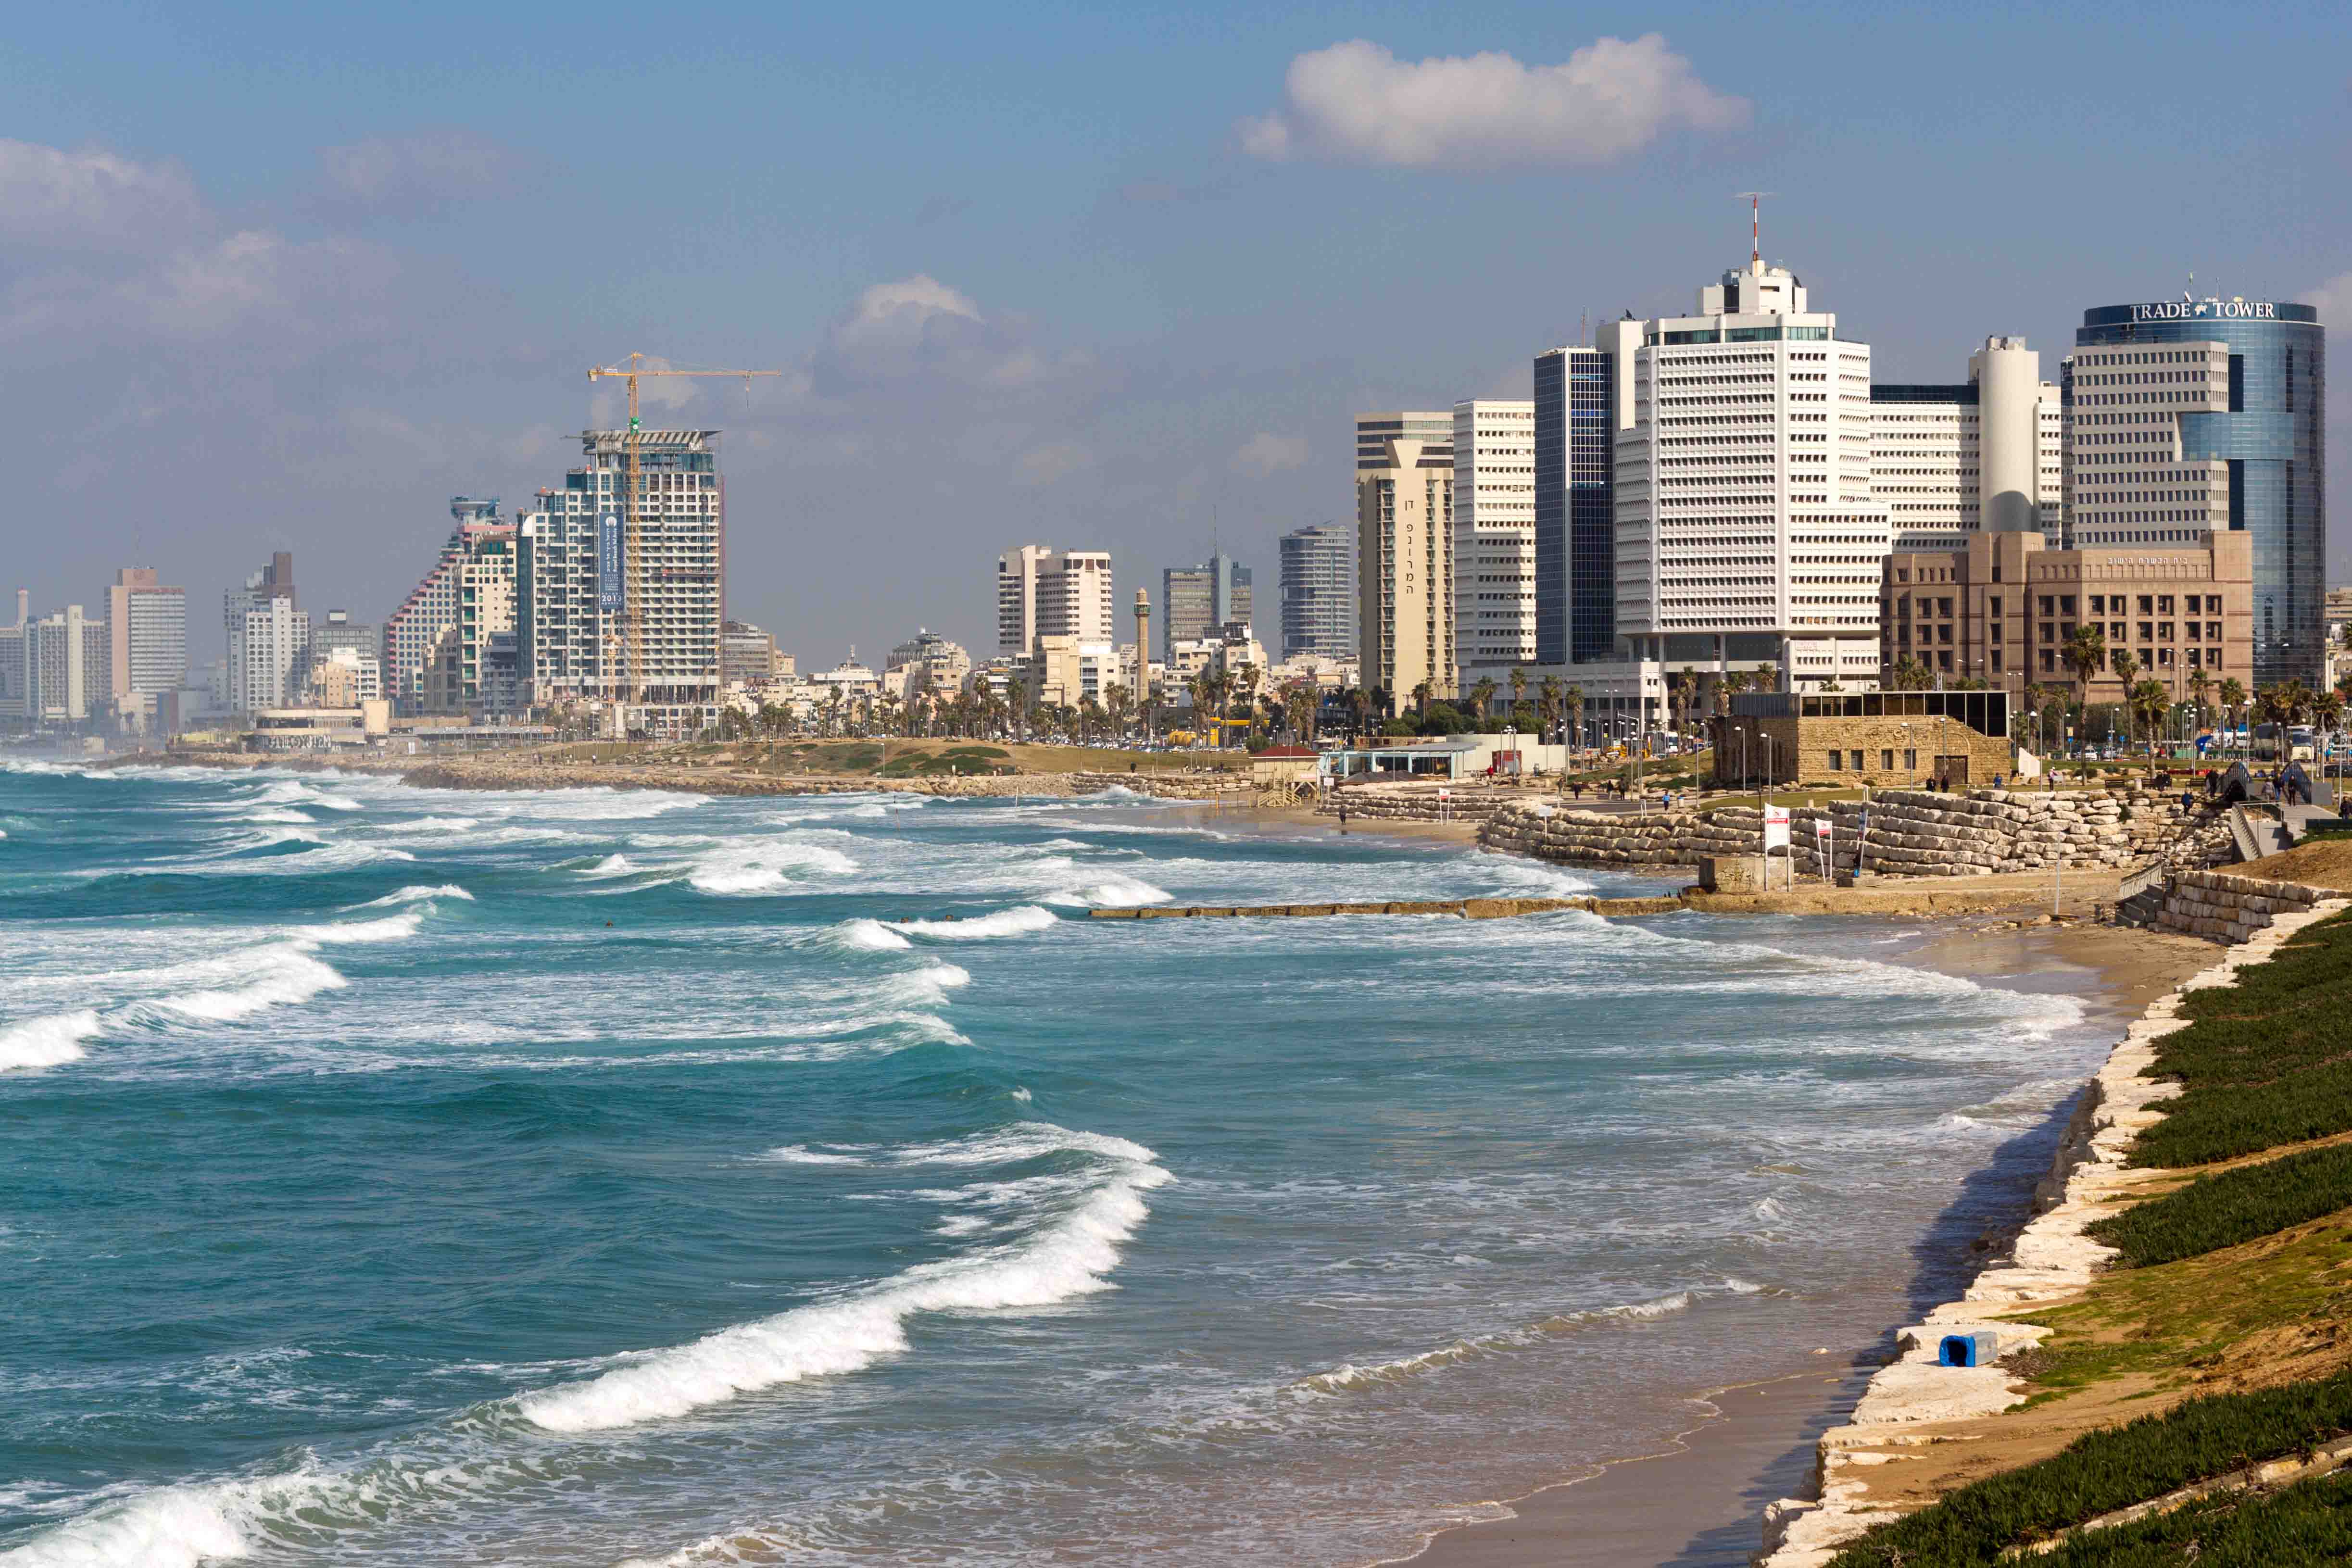 Tel Aviv Jaffa - Jaffa , HD Wallpaper & Backgrounds